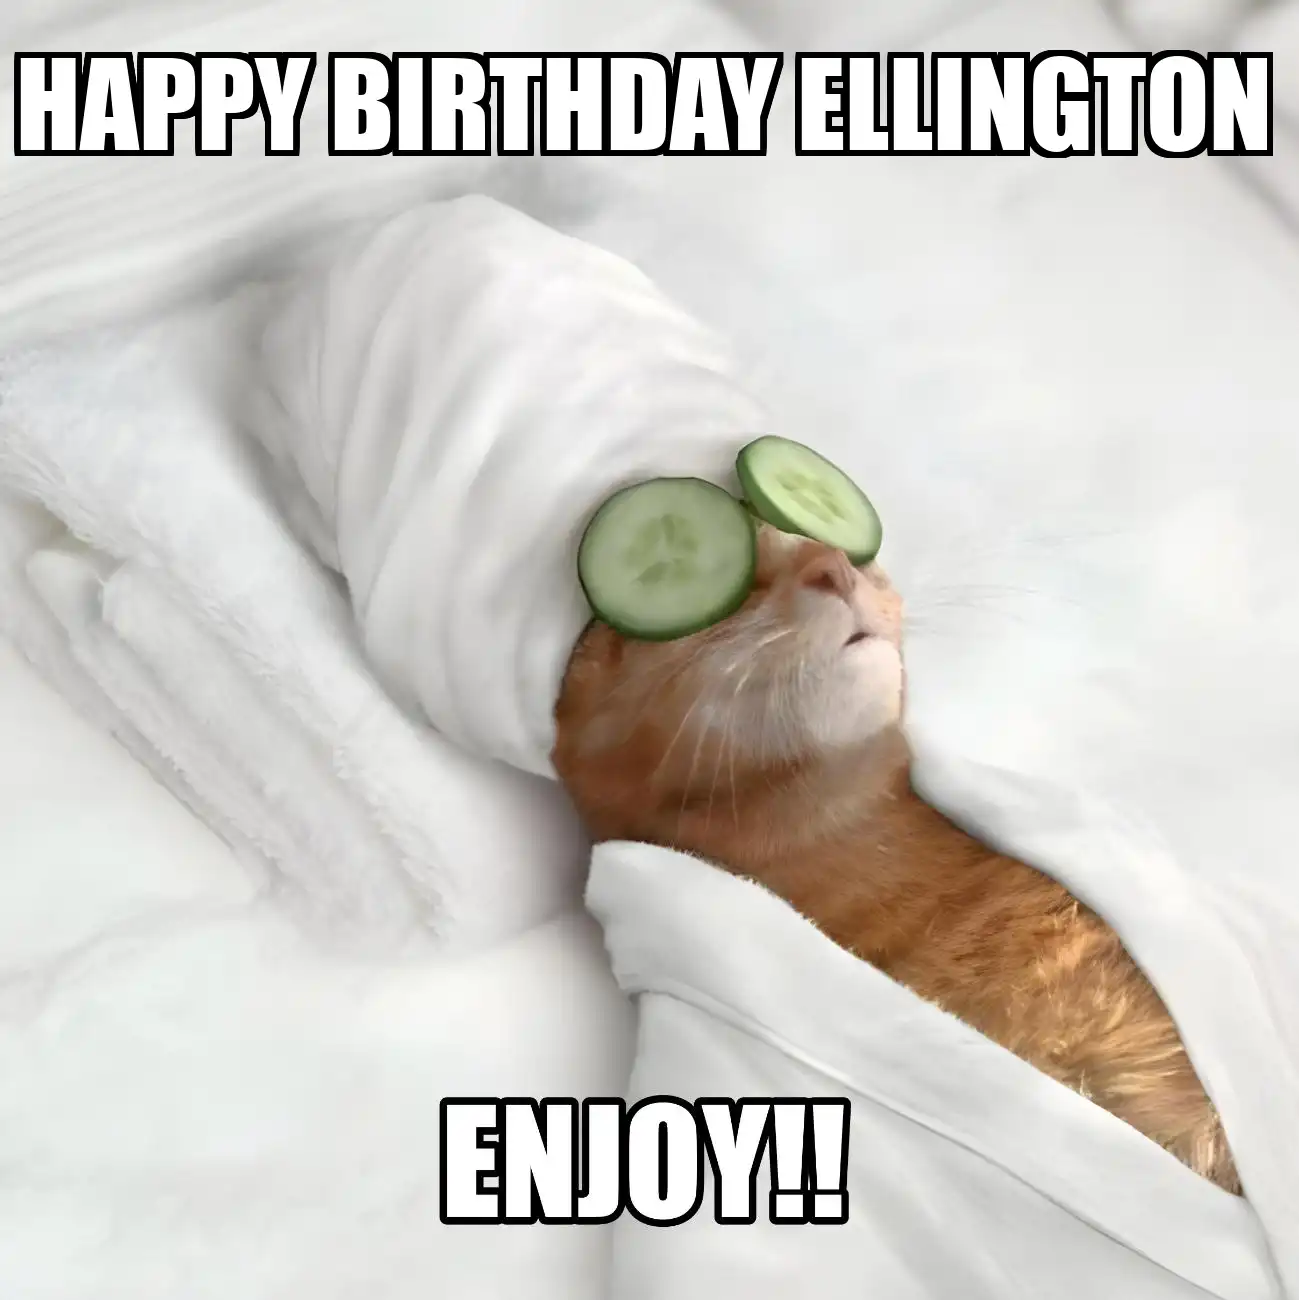 Happy Birthday Ellington Enjoy Cat Meme